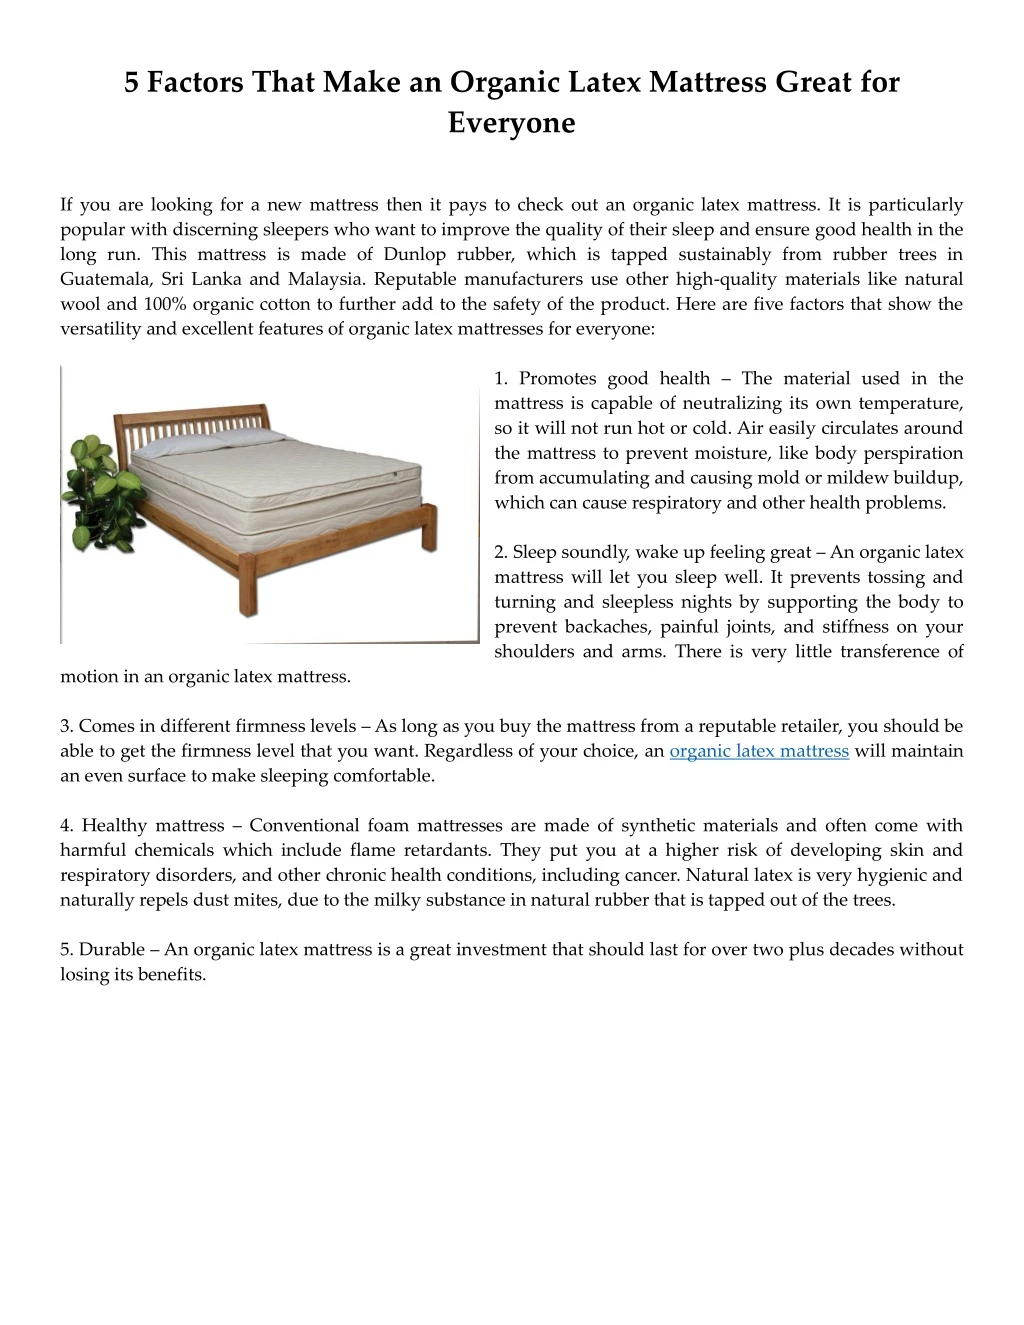 5 factors that make an organic latex mattress